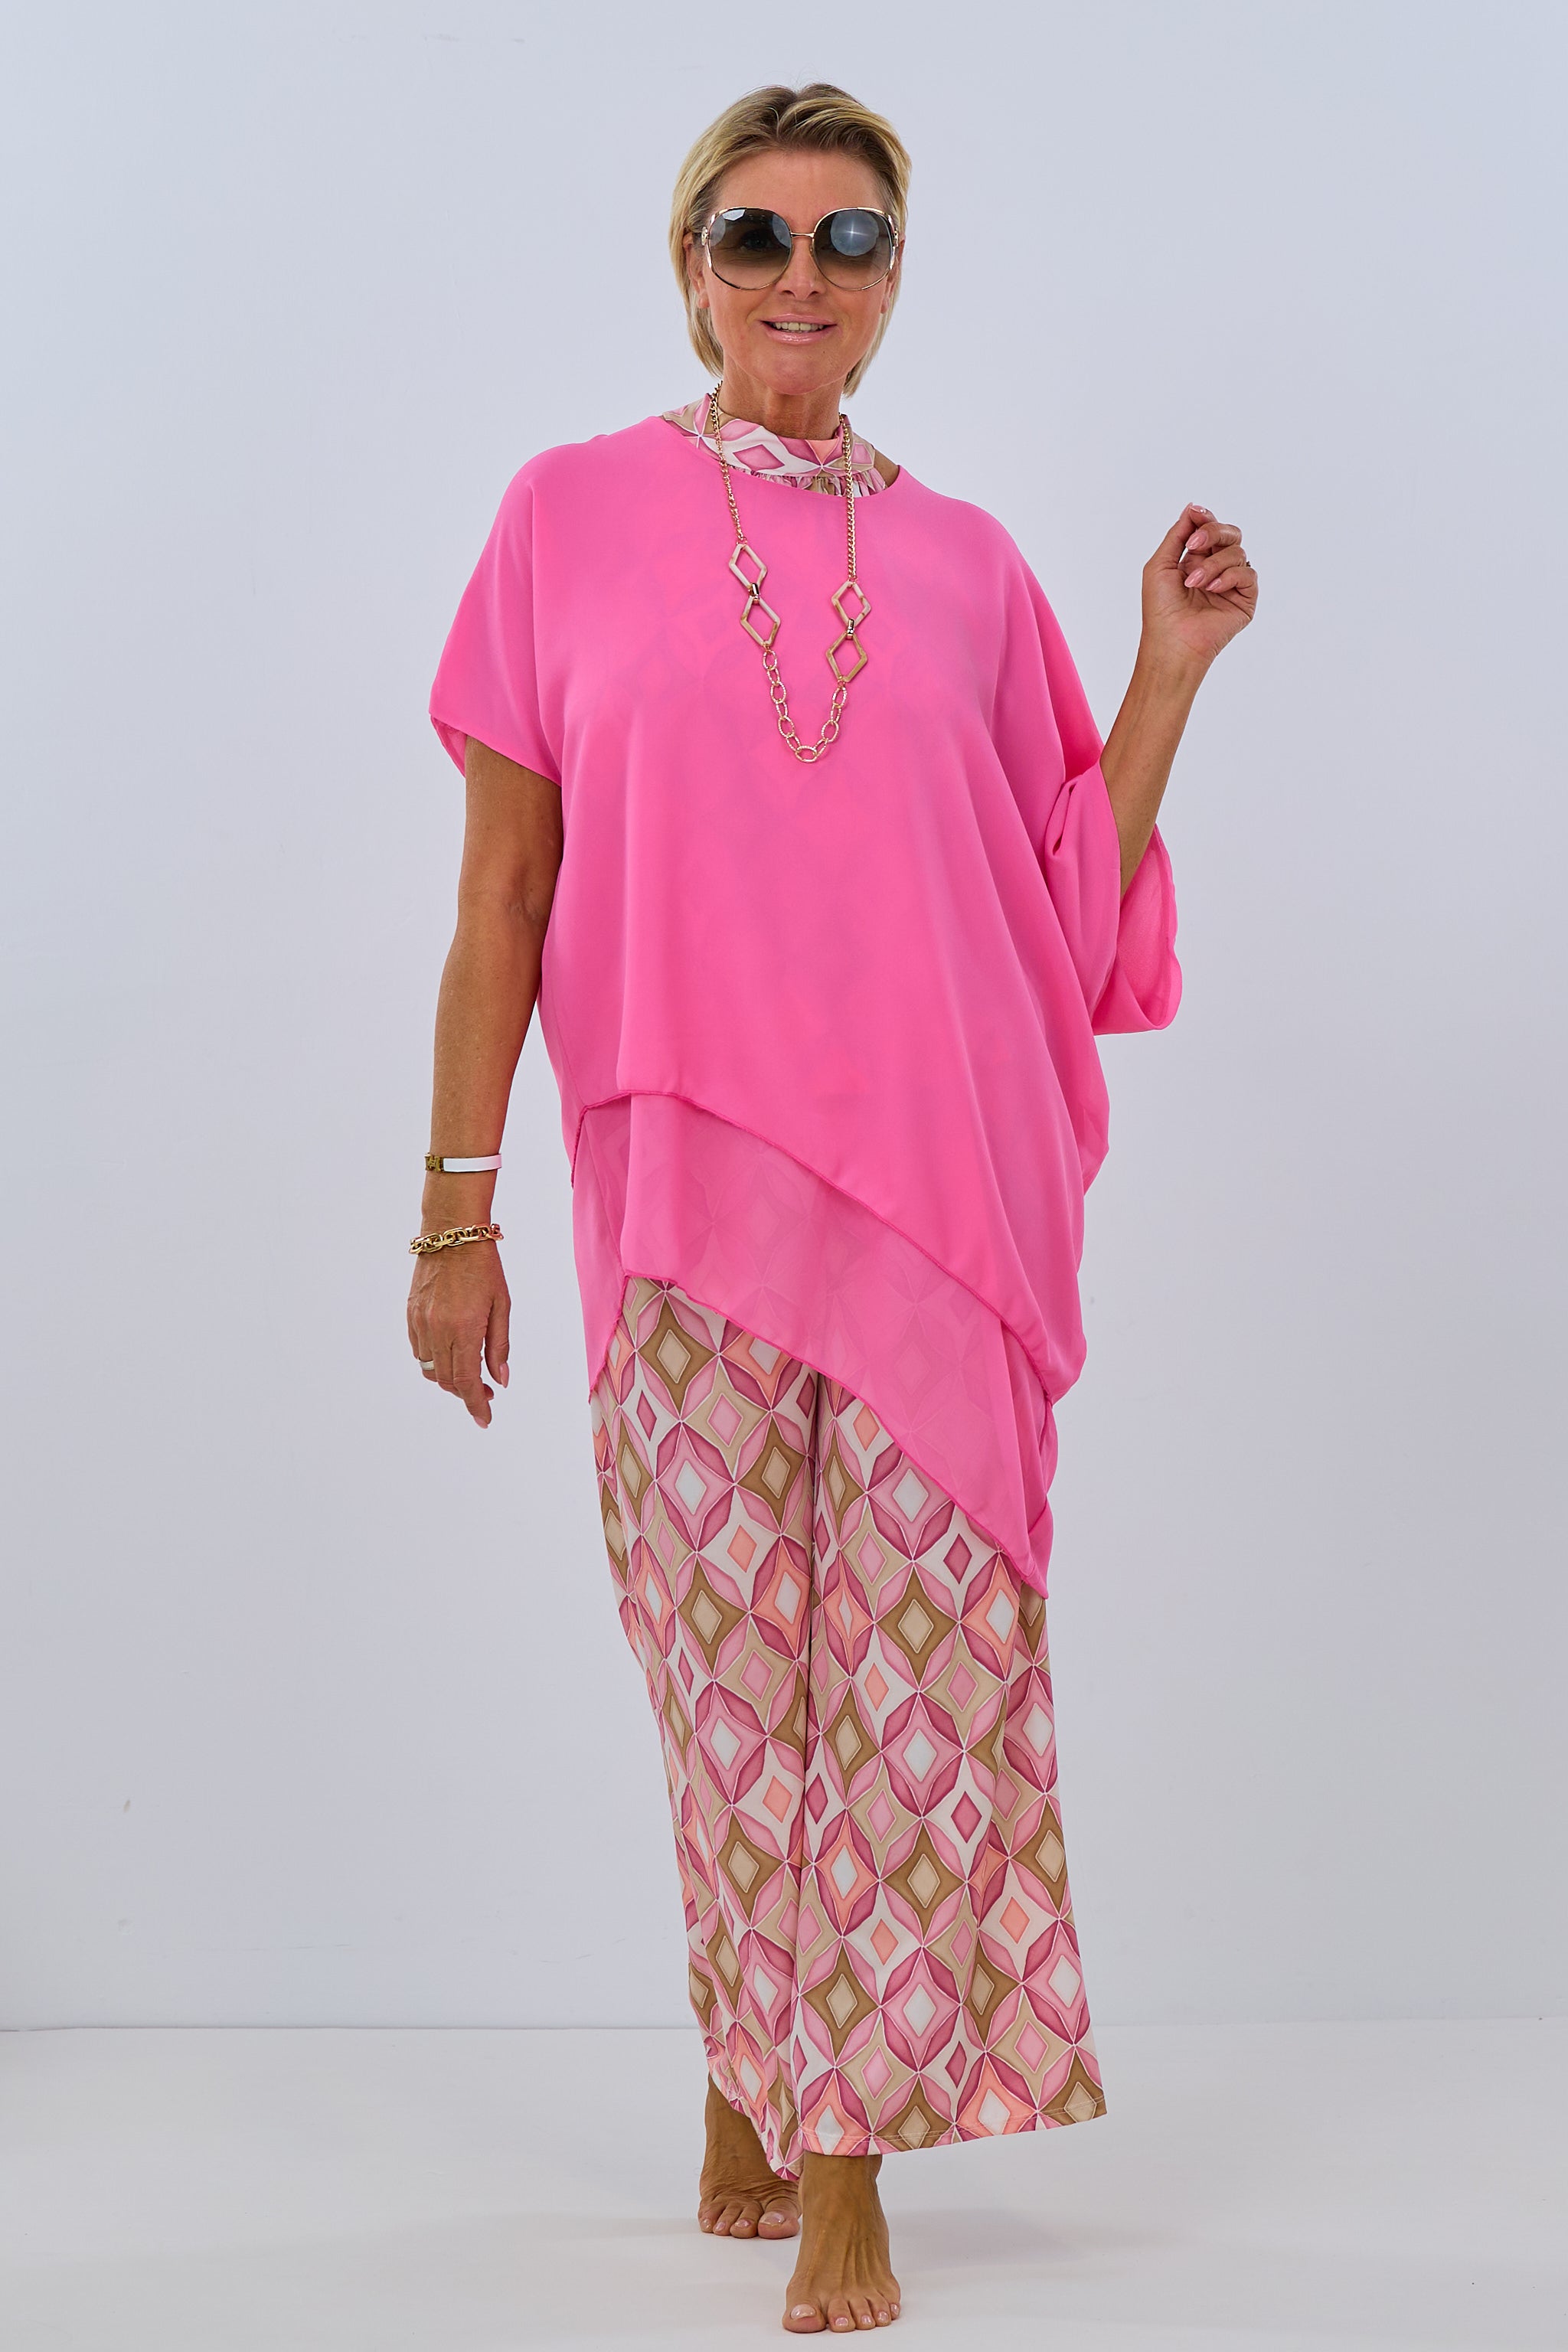 Damen Bluse asymmetrisch pink Trends & Lifestyle